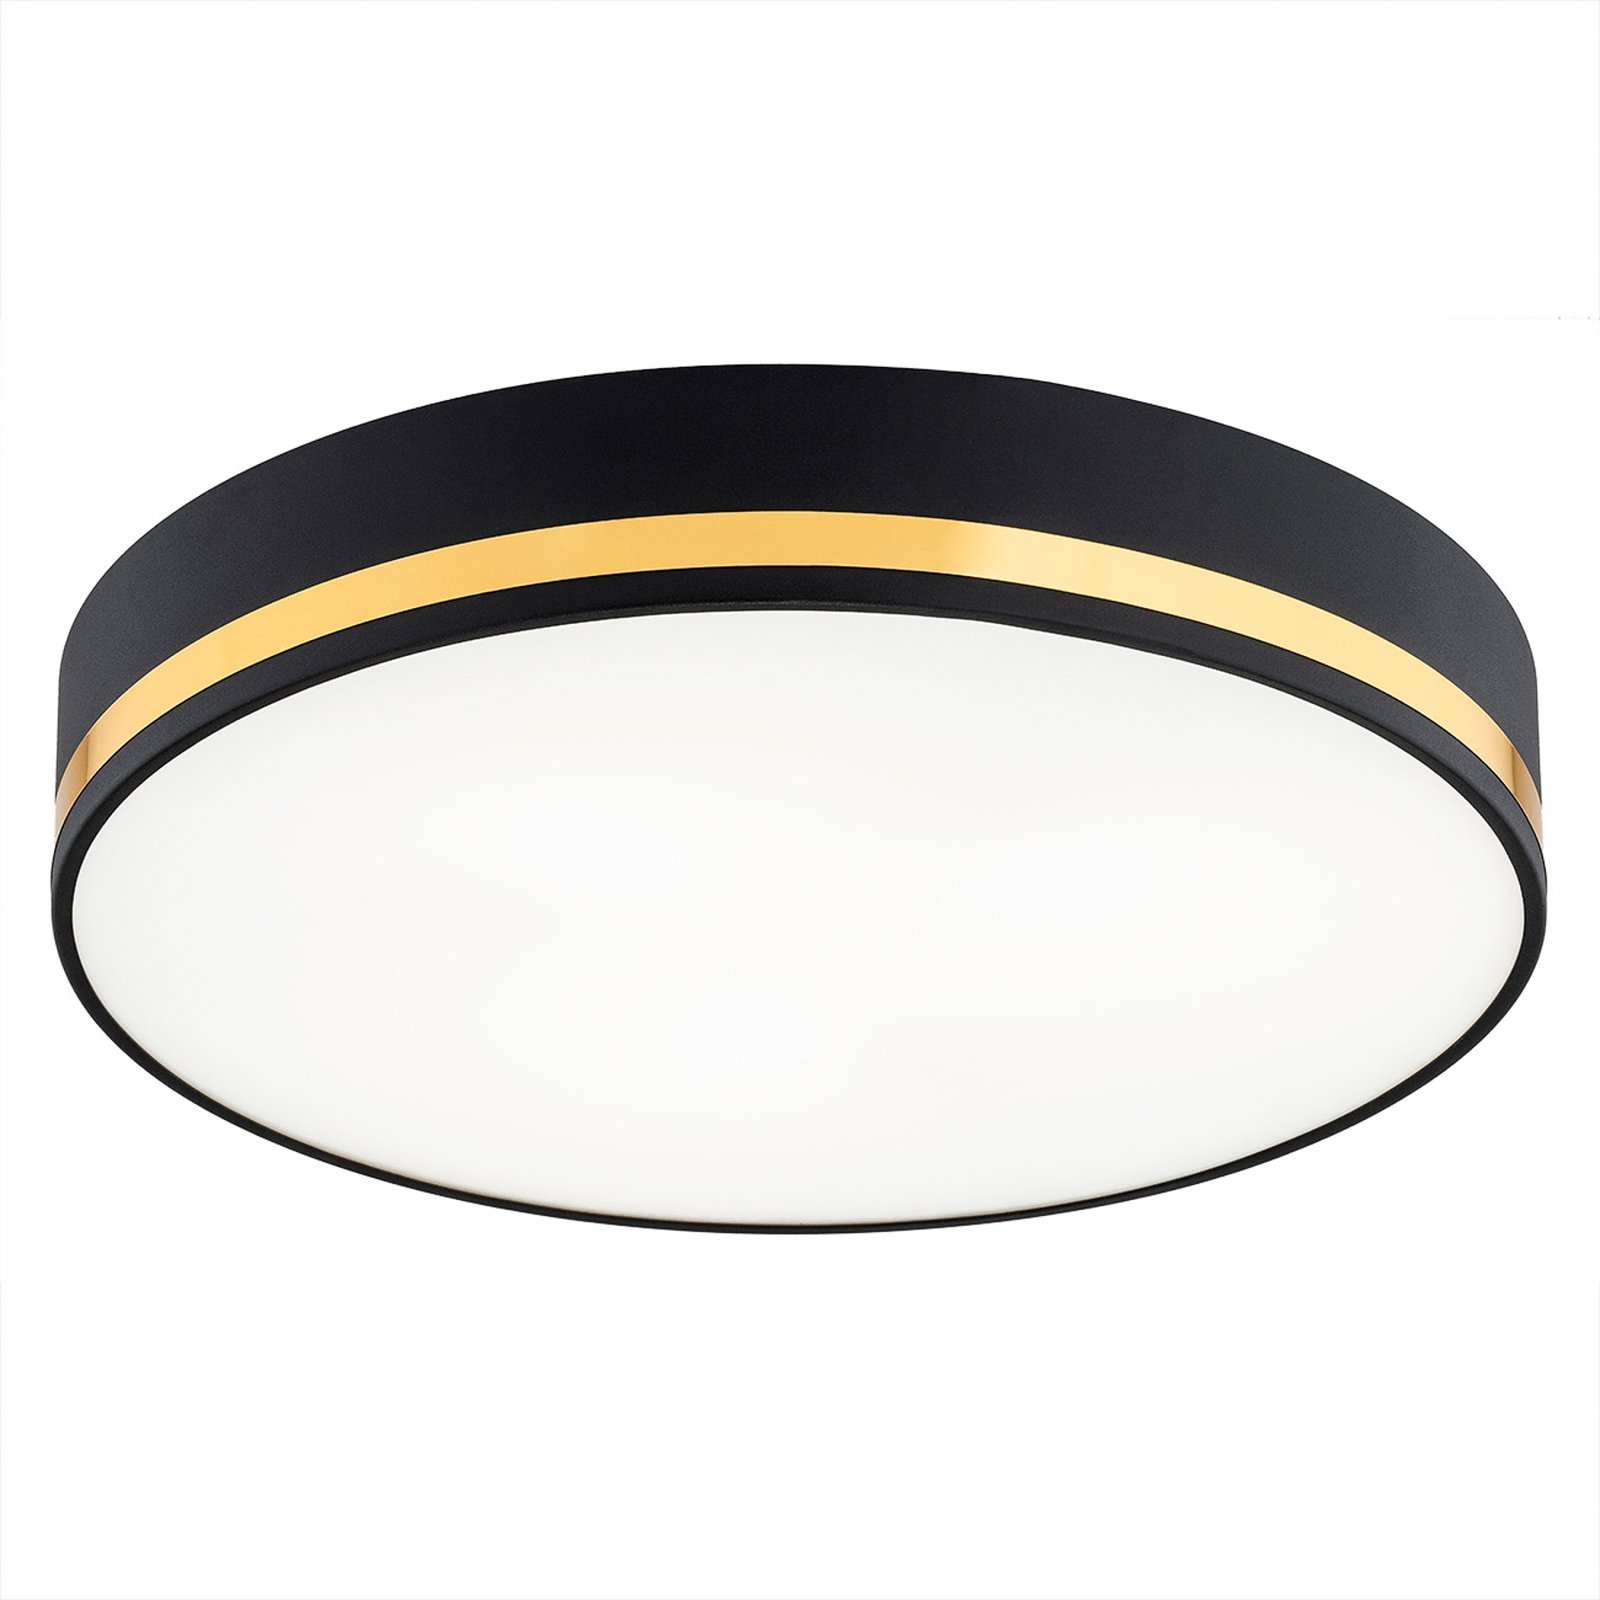 Amore ceiling light, gold stripes, black, Ø 35cm